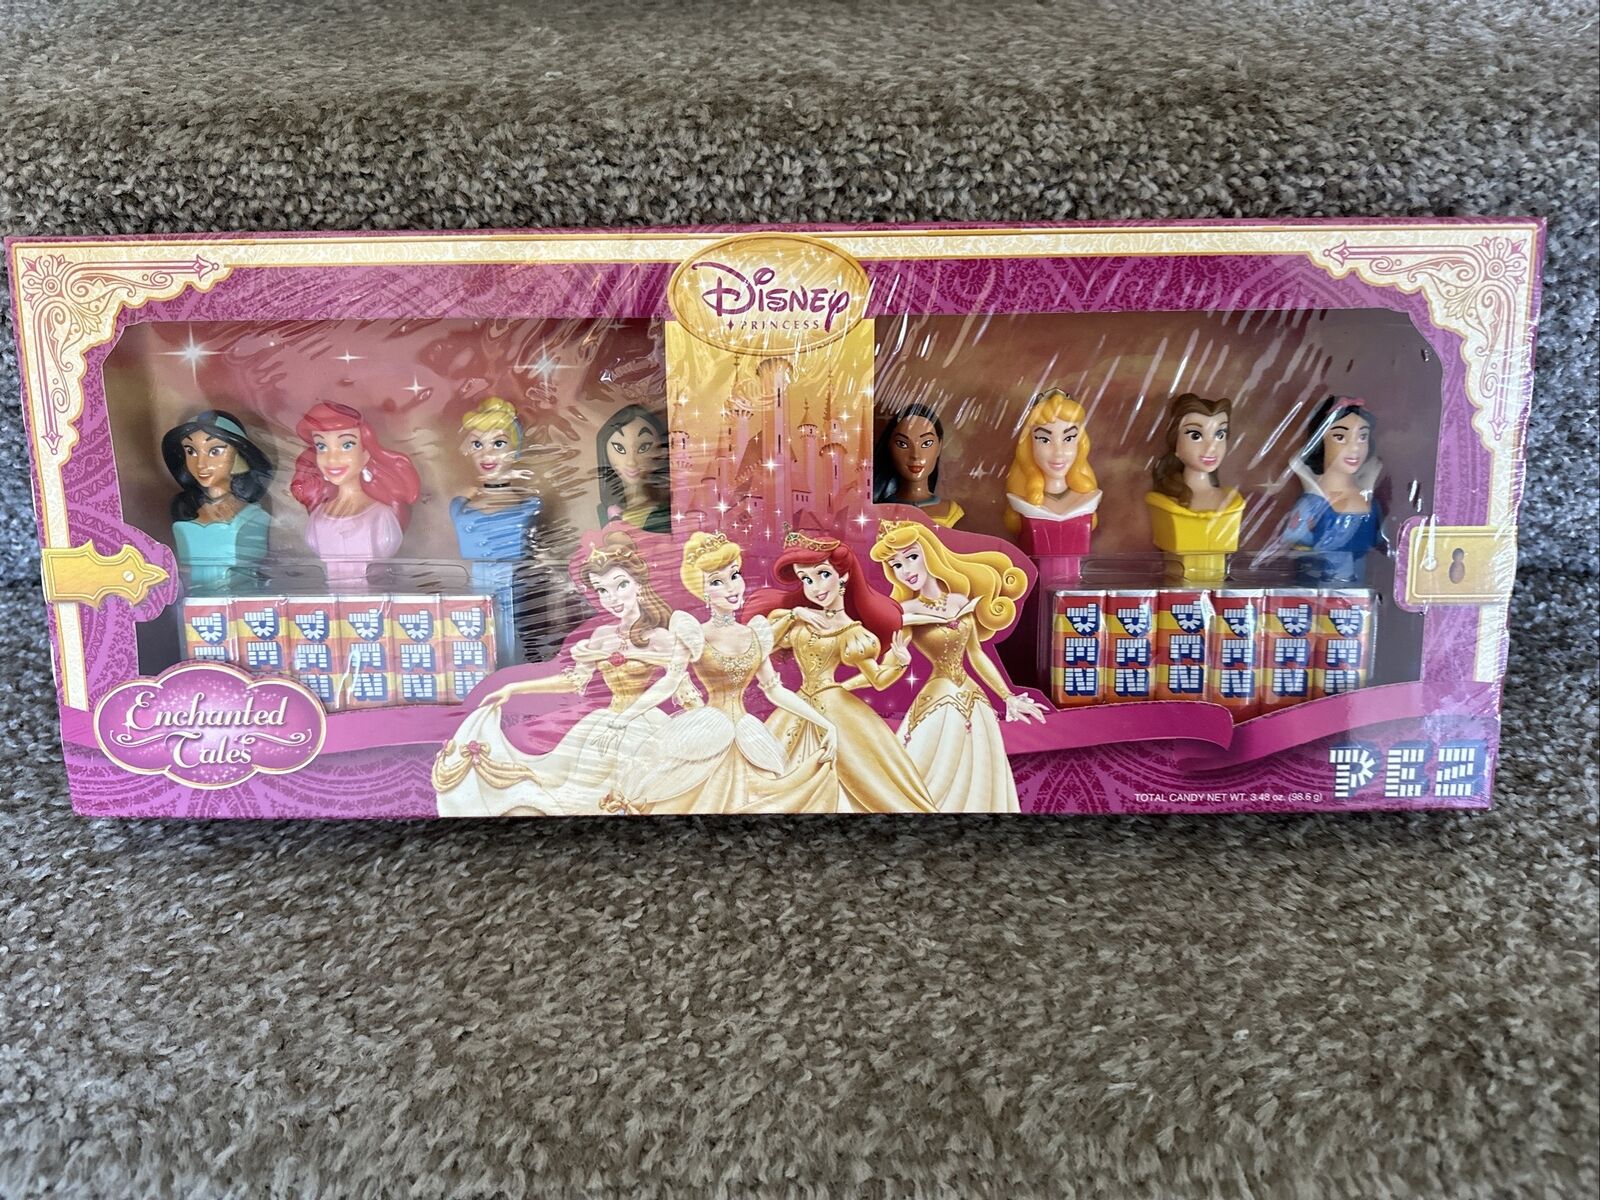 PEZ Disney Princess Collectors Set 8 Dispensers NIB (Enchanted Tales) New in Box